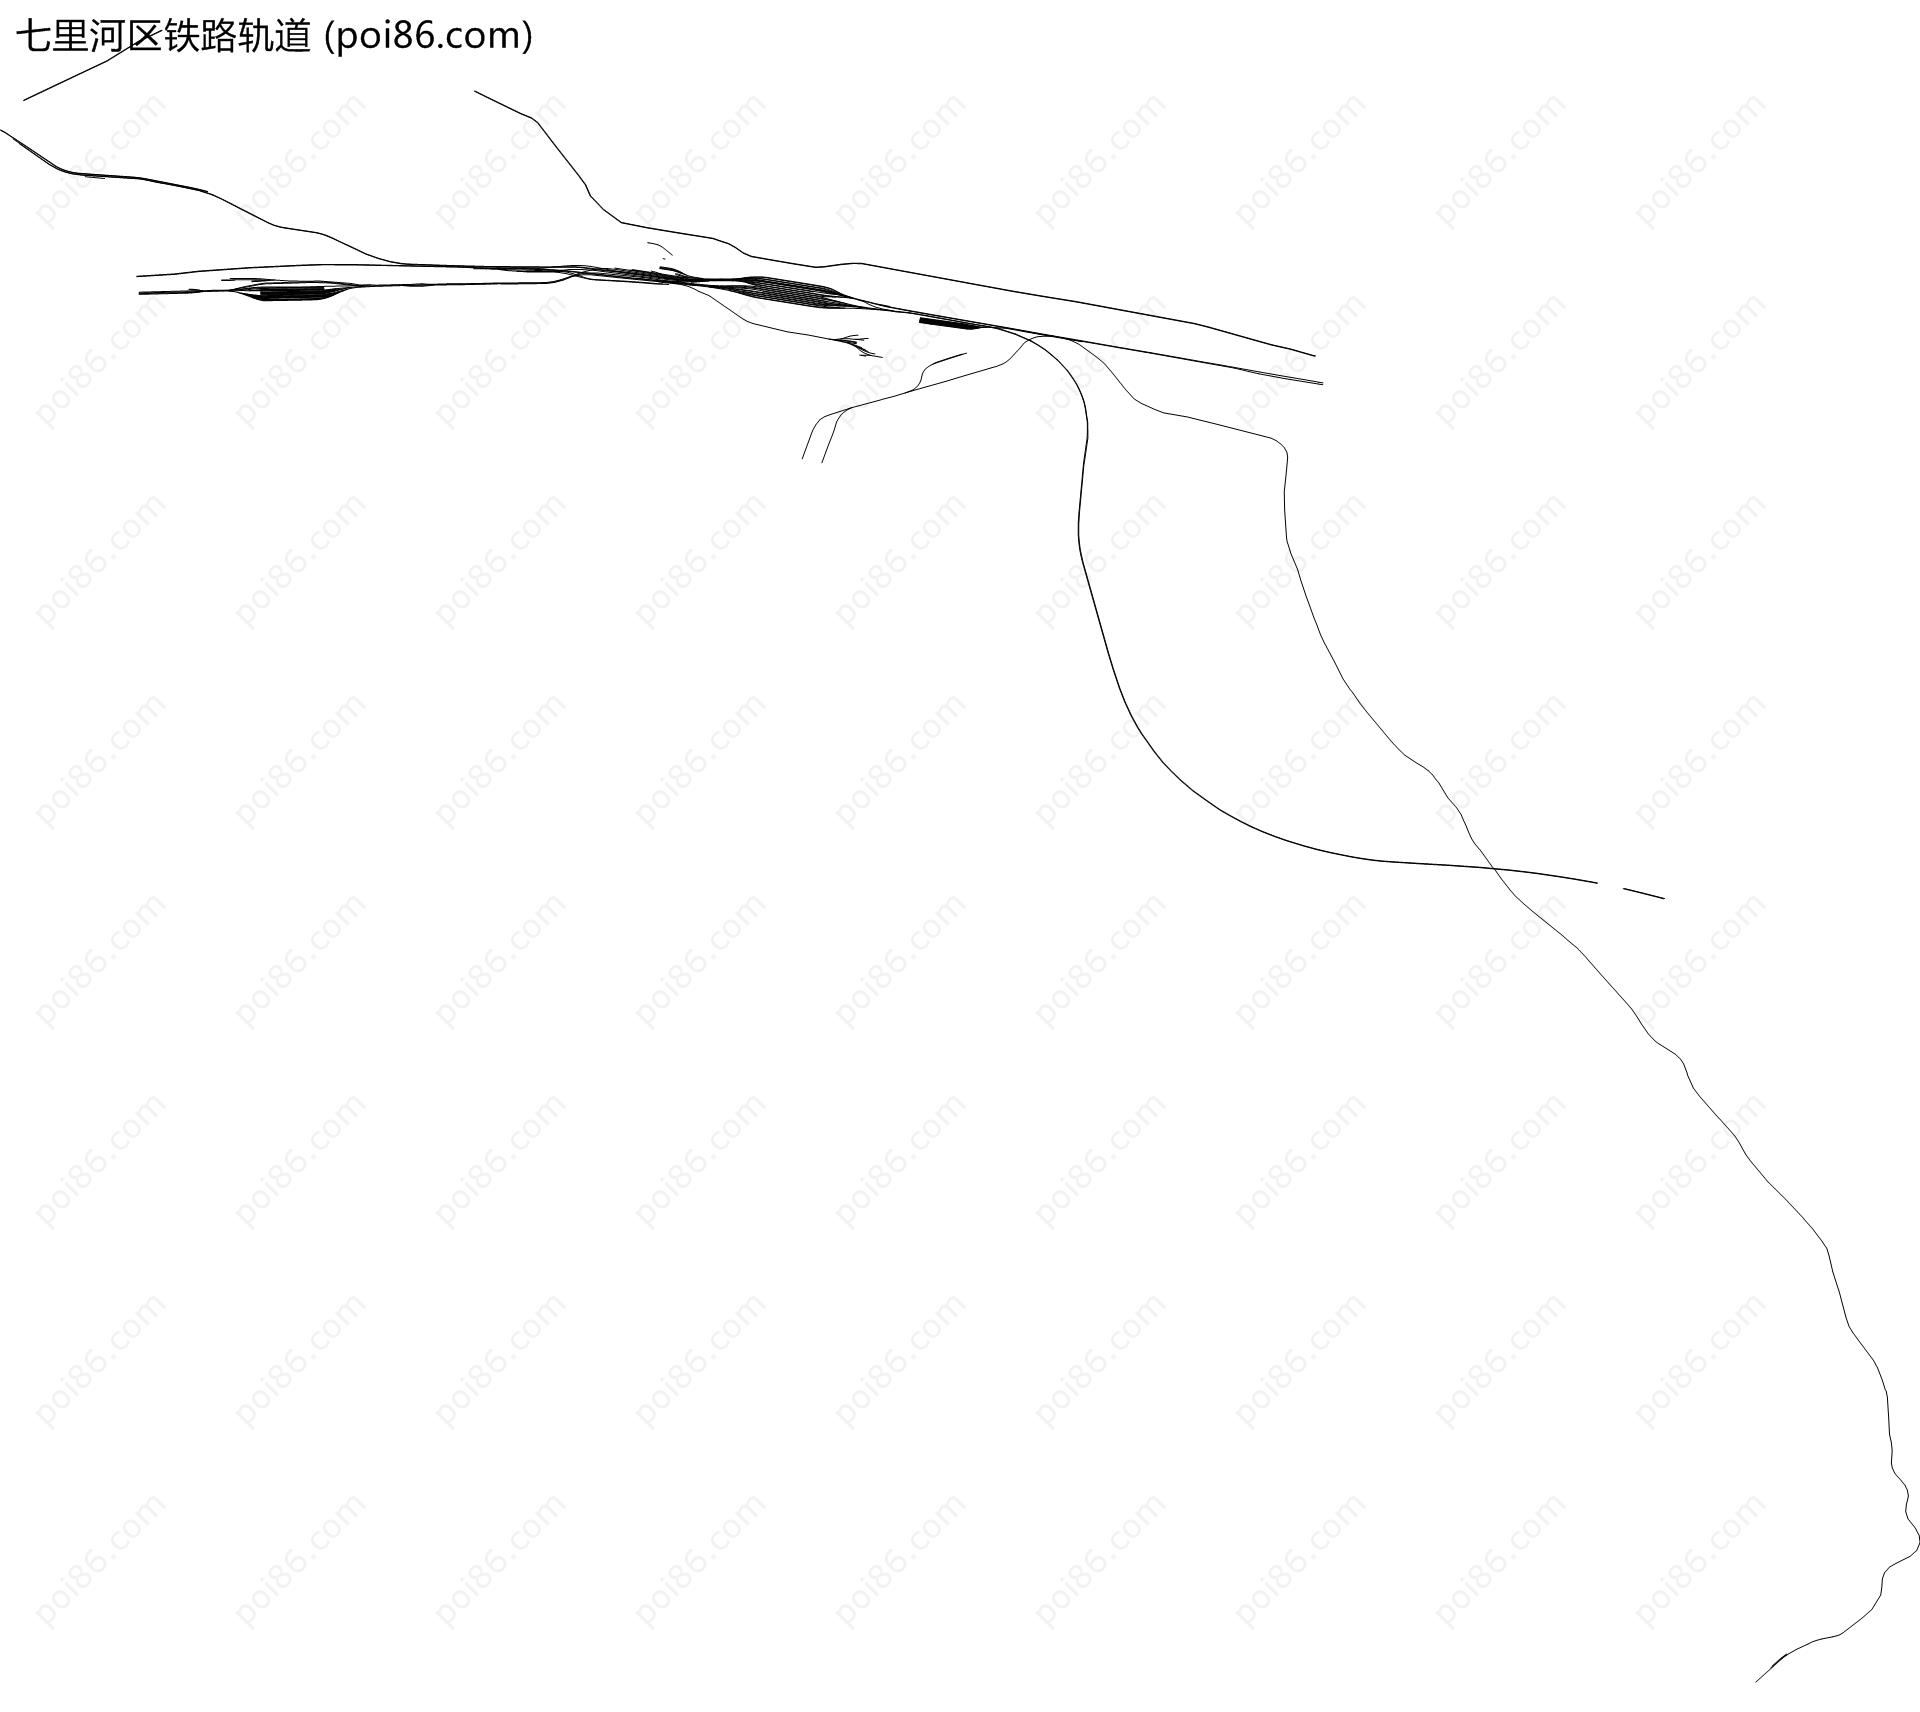 七里河区铁路轨道地图